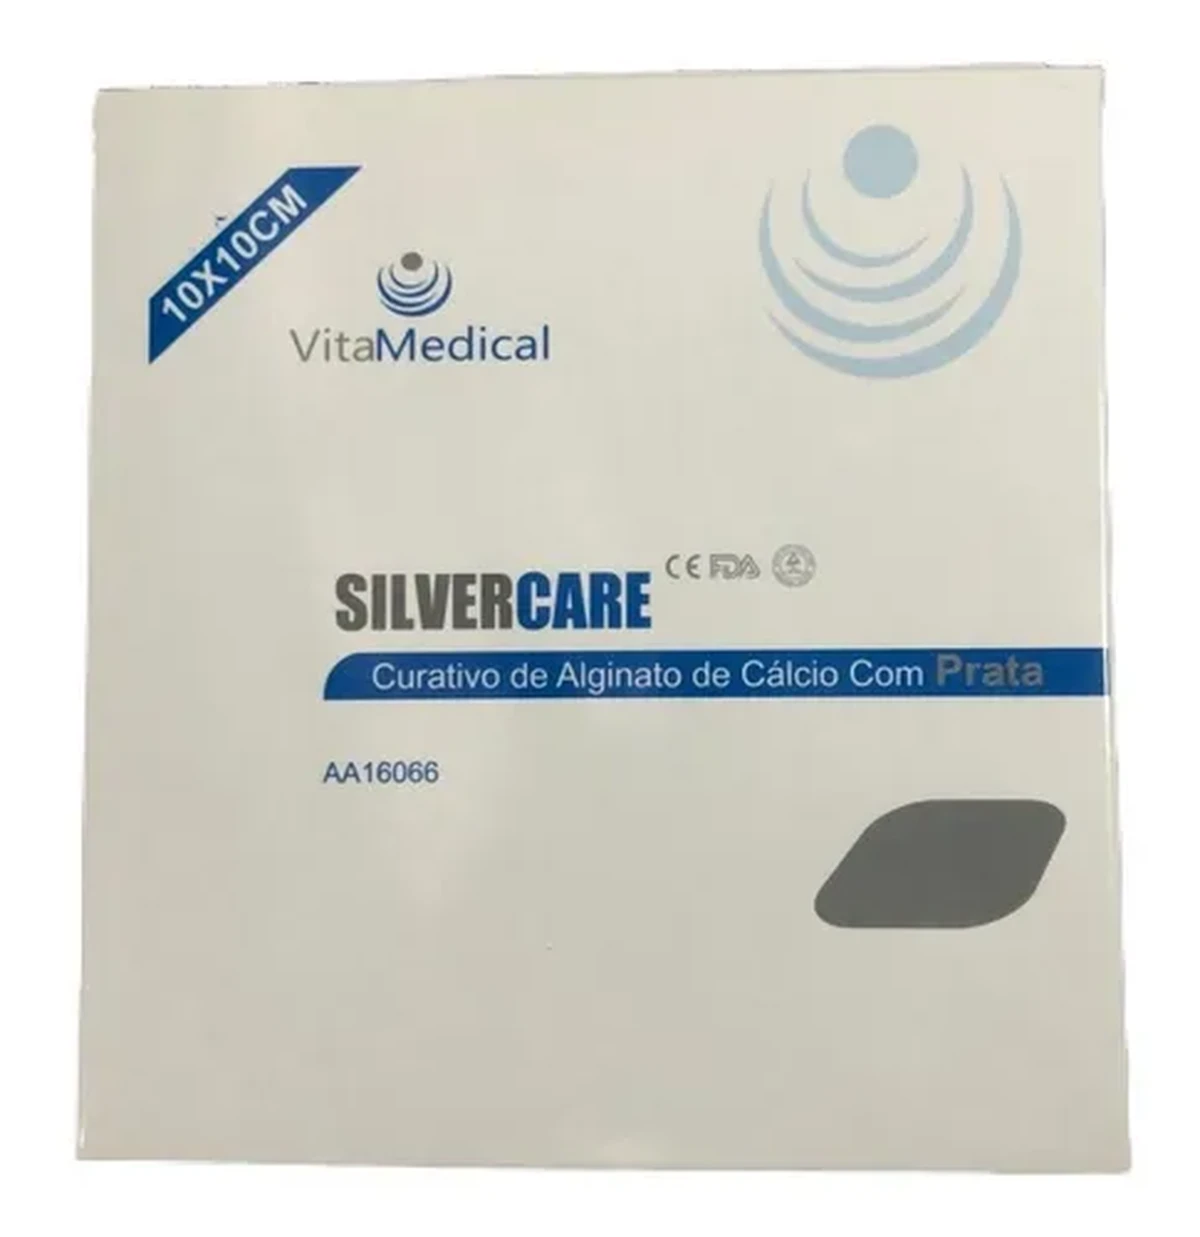 Foto do produto Curativo de Alginato de Cálcio com prata- 10cm x 10cm  - Silvercare - Vitamedical